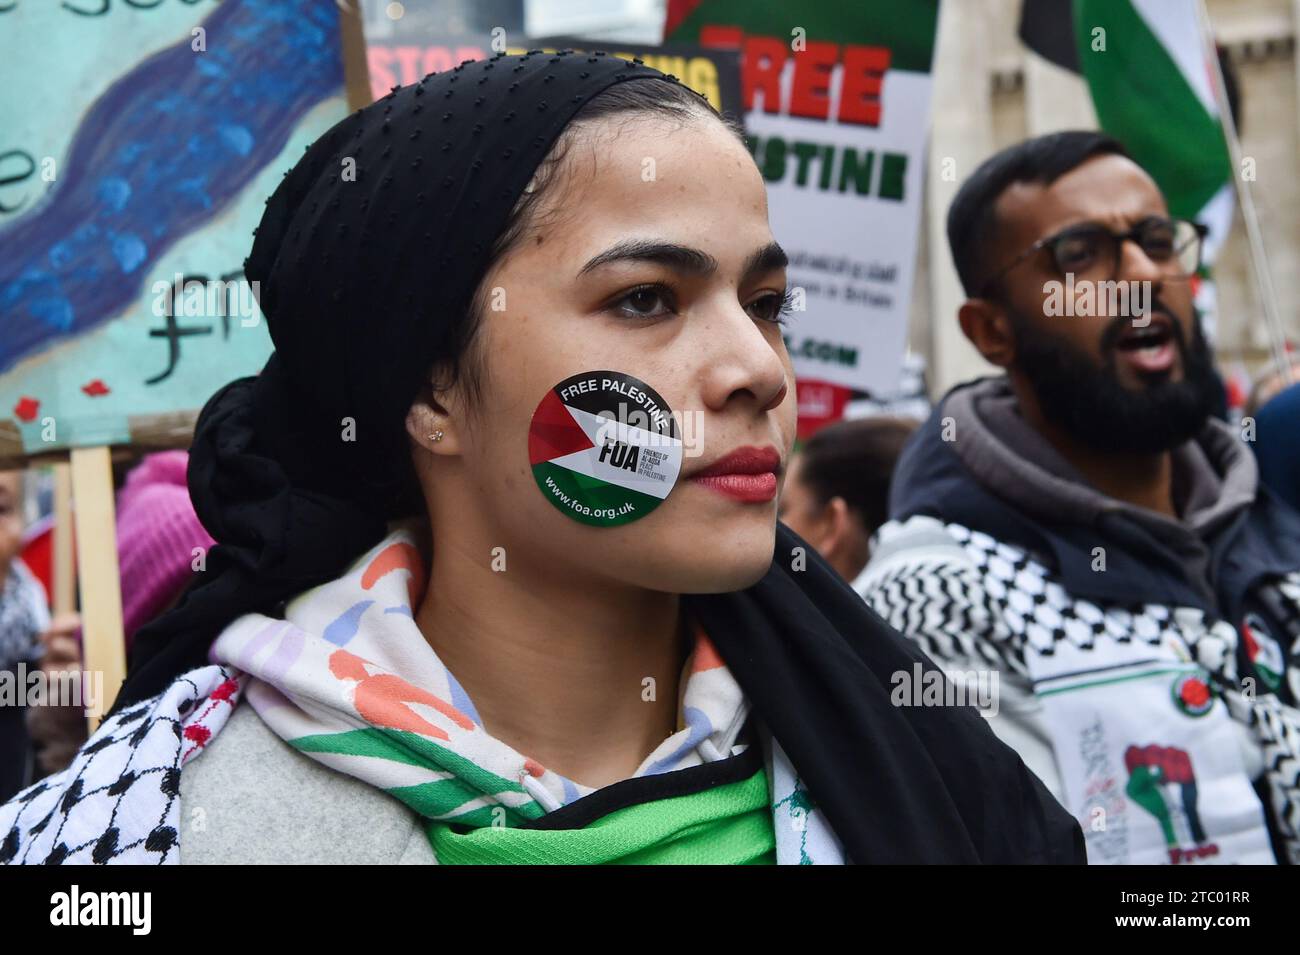 Demonstranten versammelten sich in der Bank Junction, London, als Teil des National March for Palestine, um für einen vollständigen Waffenstillstand und ein sofortiges Ende des Krieges in Gaza zu plädieren. Die von der Palästinensischen Solidaritätskampagne organisierte Demonstration wird von verschiedenen propalästinensischen Gruppen unterstützt, darunter Freunde von Al-Aqsa, Stop the war Coalition und das Palästinensische Forum in Großbritannien. Die Demonstranten marschieren durch das Zentrum Londons und rufen Frieden und Solidarität mit dem palästinensischen Volk auf. Stockfoto